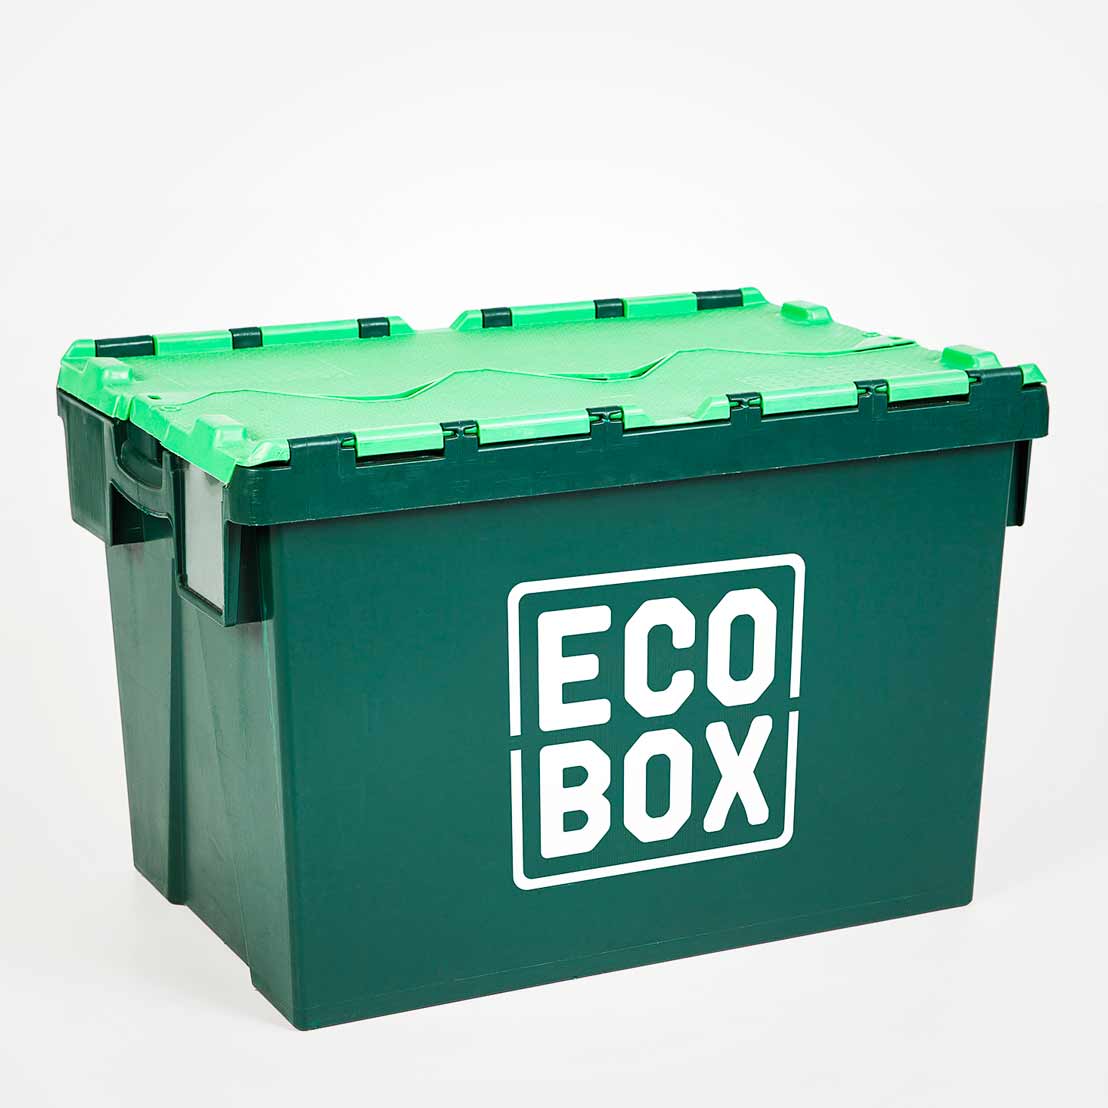 ecobox single